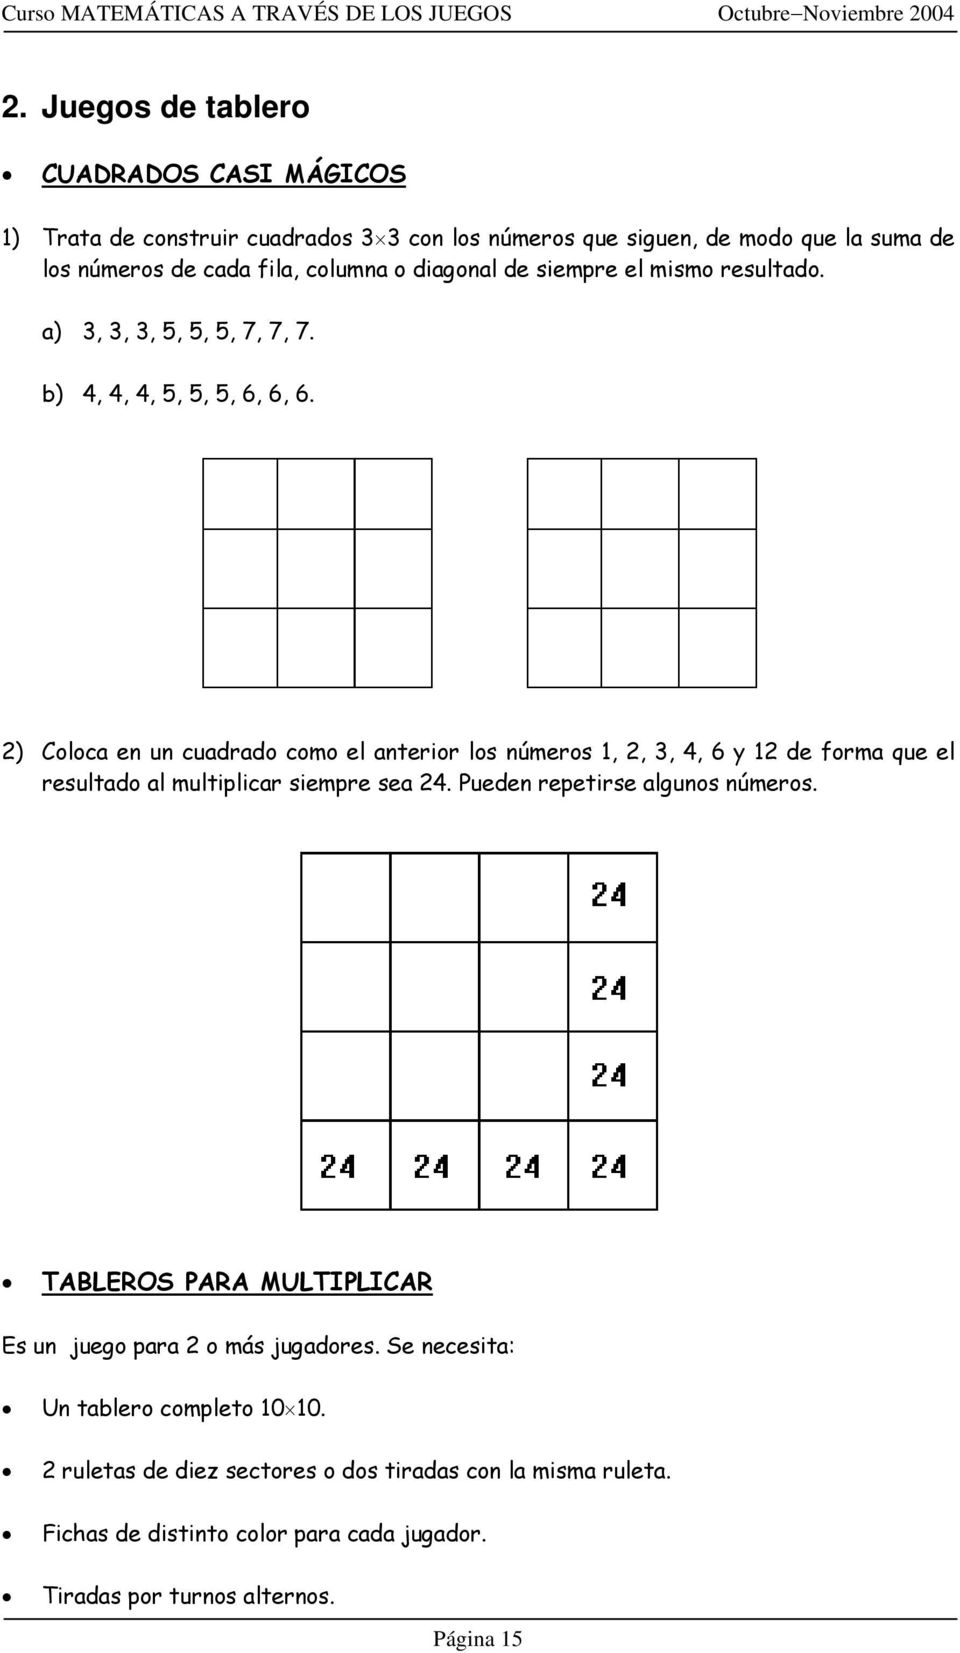 2) Coloca en un cuadrado como el anterior los números 1, 2, 3, 4, 6 y 12 de forma que el resultado al multiplicar siempre sea 24. Pueden repetirse algunos números.